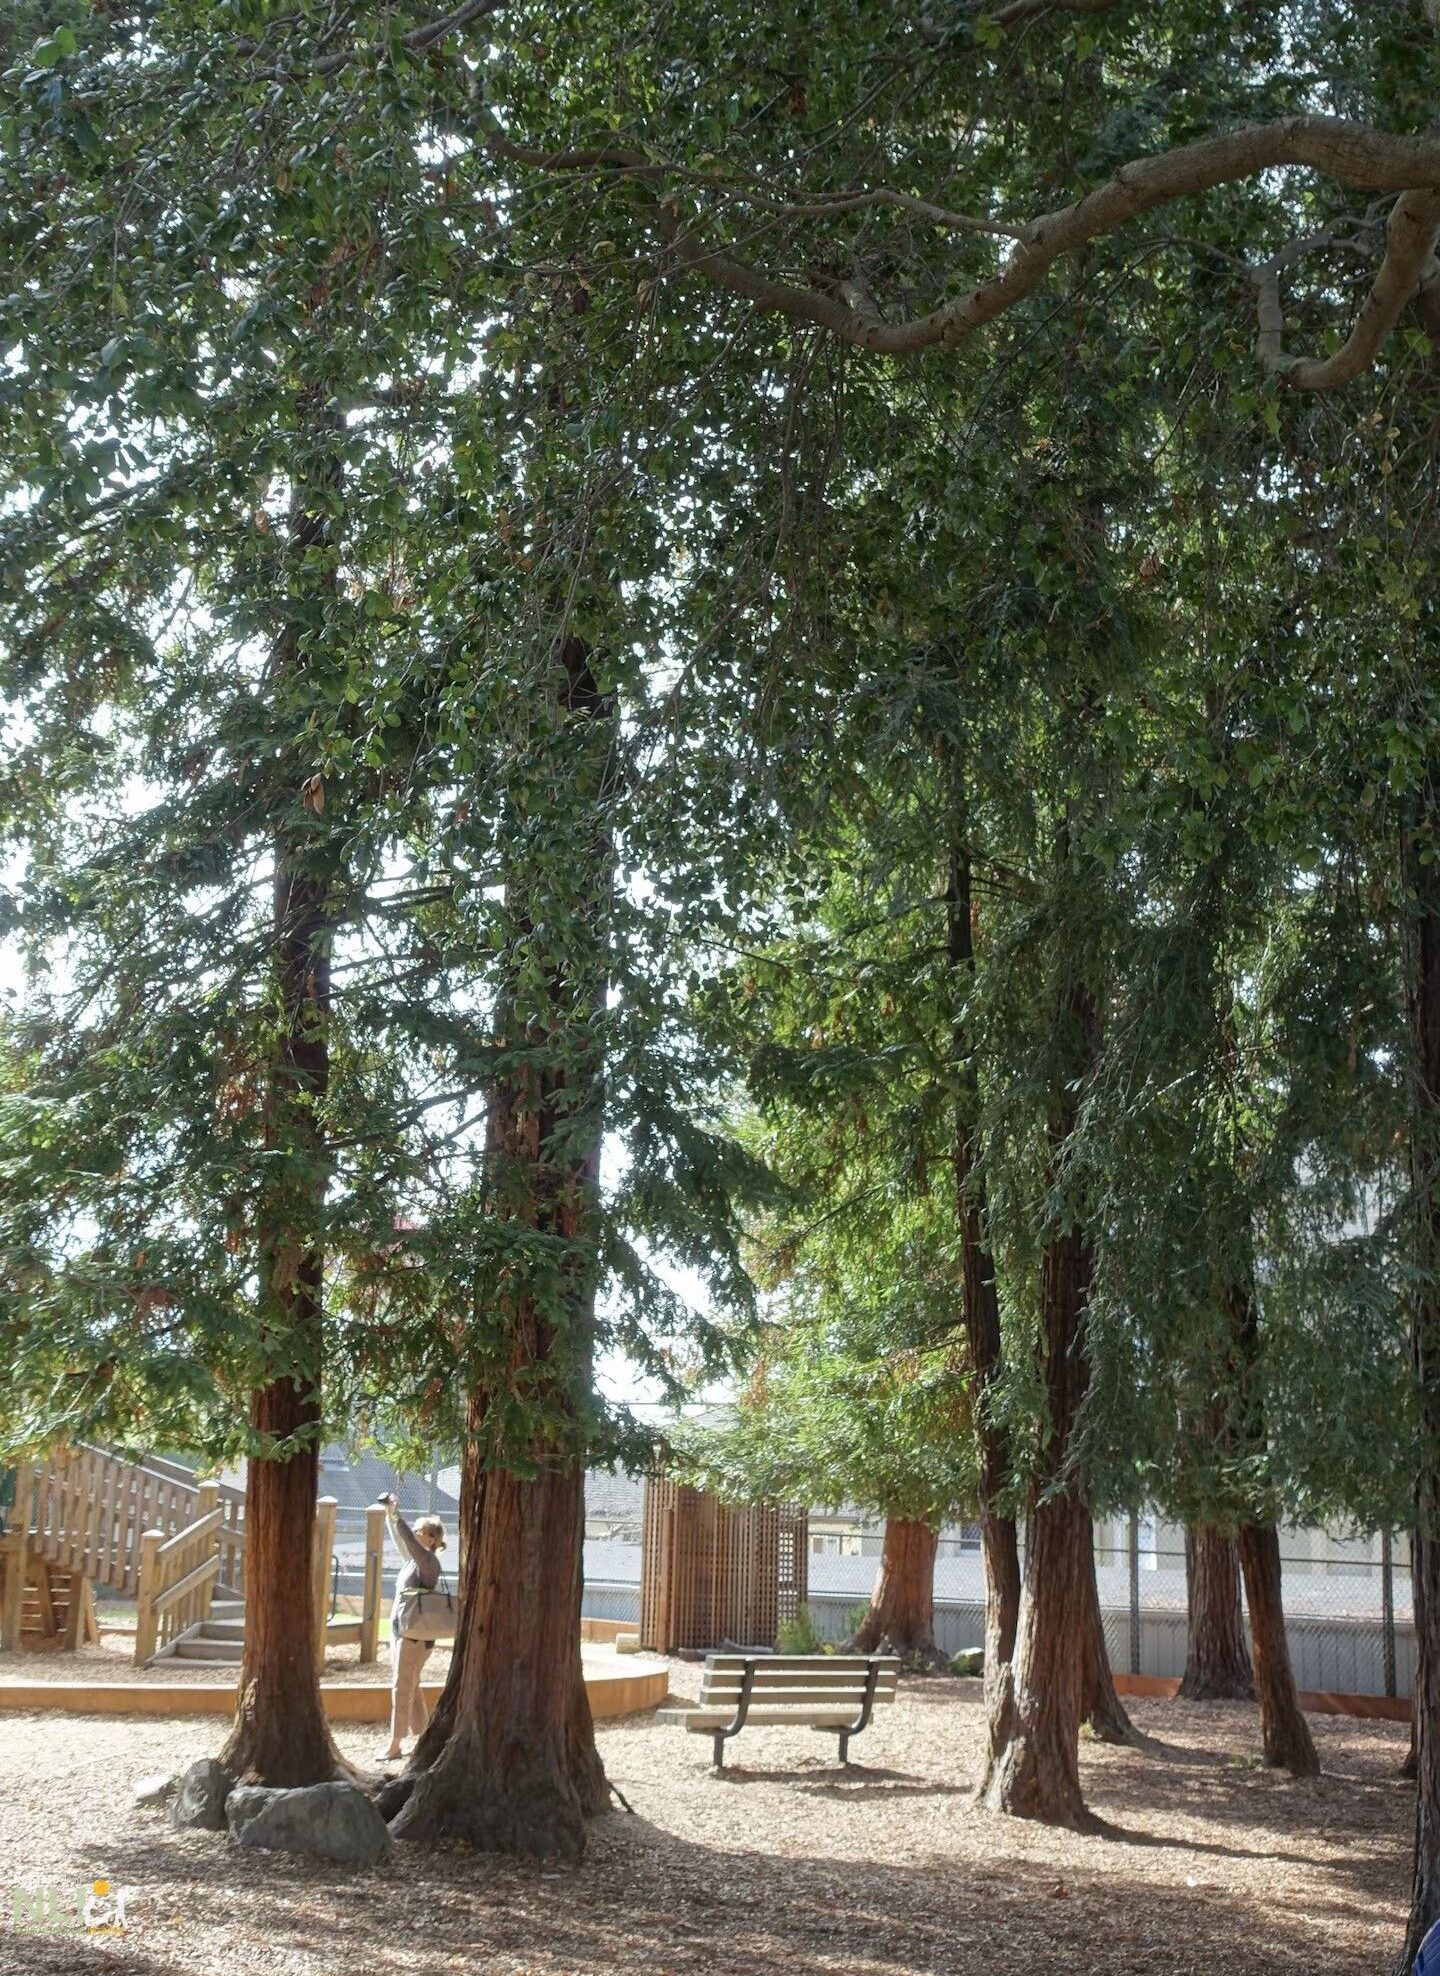 Redwoods at Washington Elementary